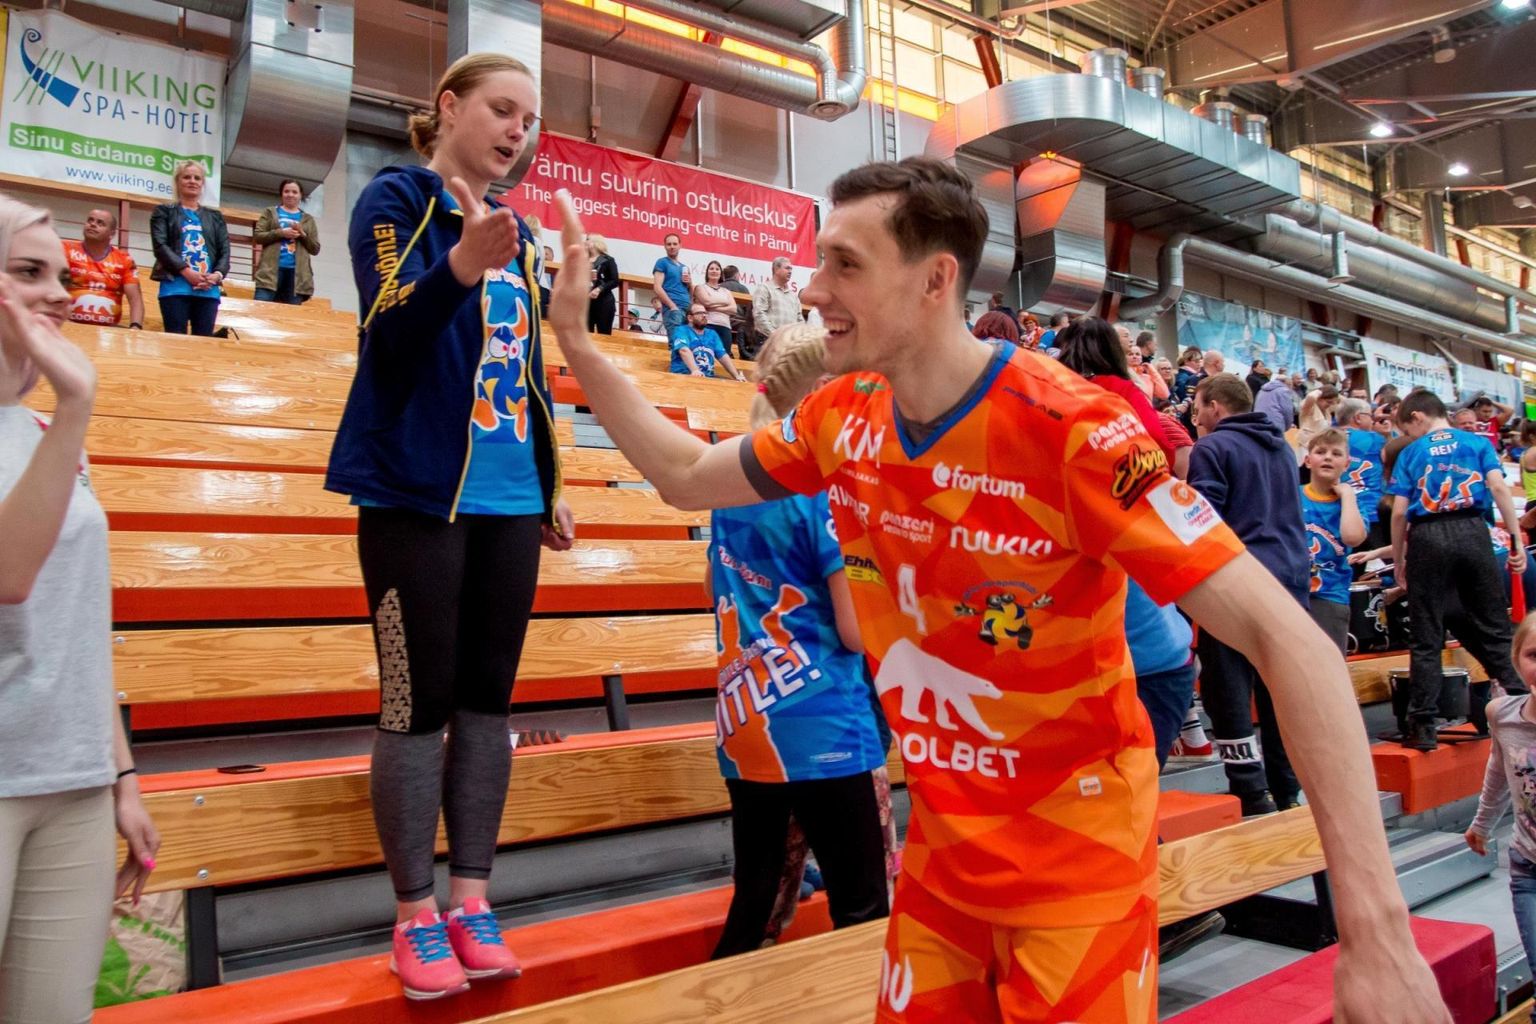 Temporündaja Toms Švans paistis Pärnu tiimi hooaja avamatšis silma nii oma “osakonnas” kui servijoone taga. 